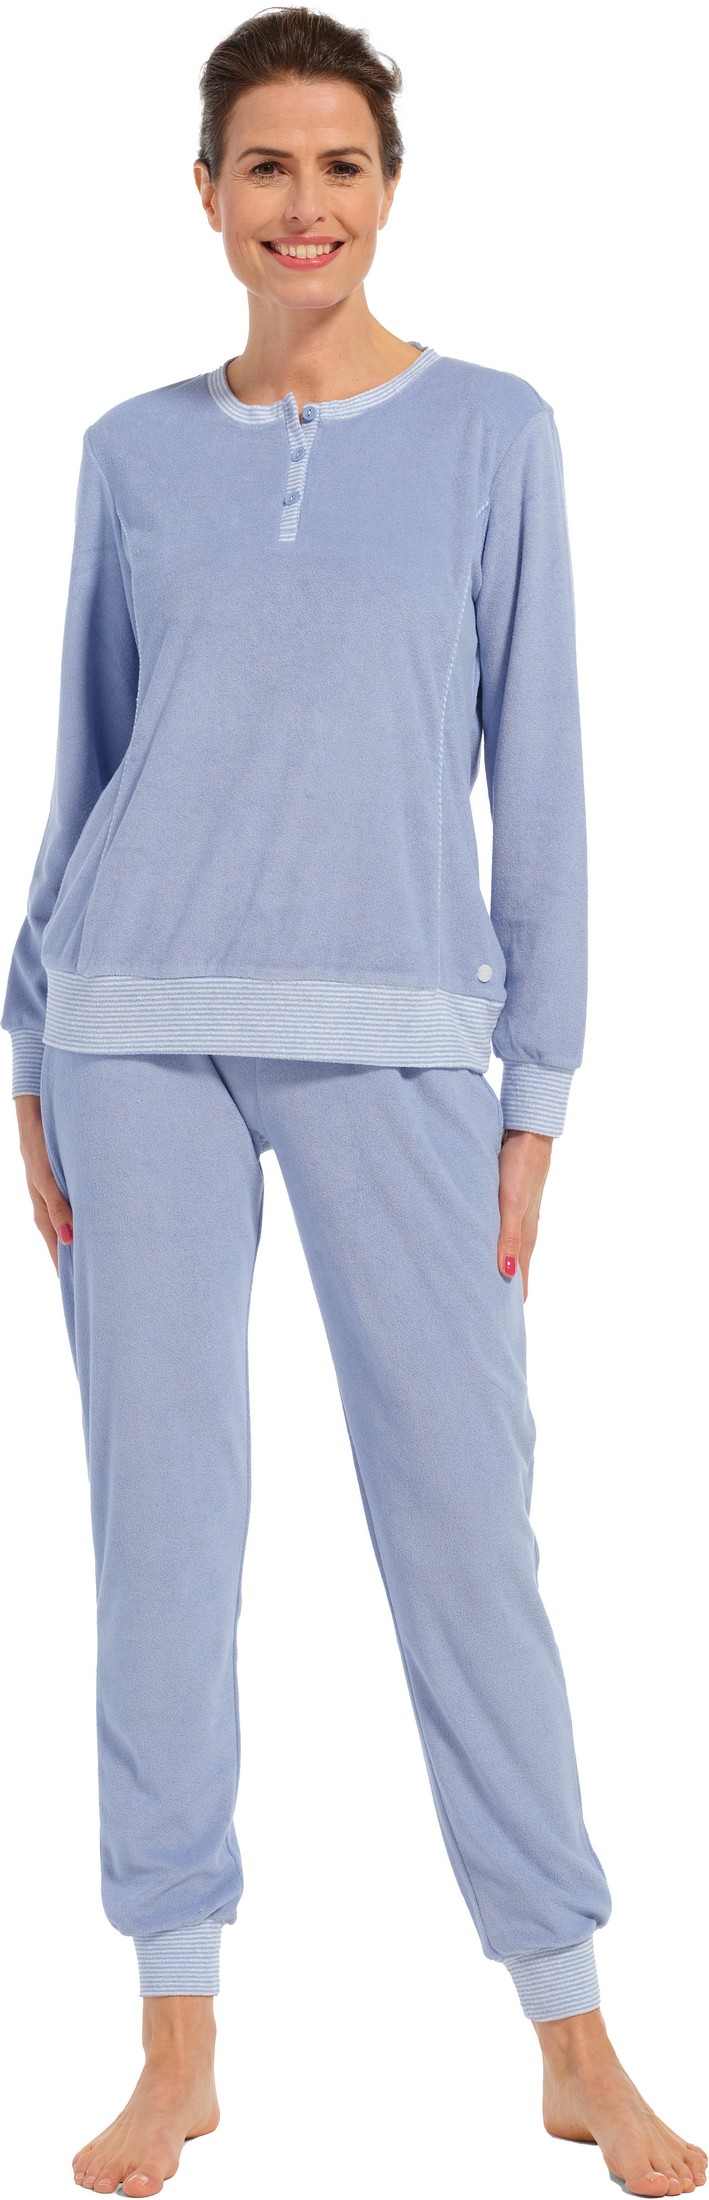 Pastunette dames badstof pyjama 20232-174-4 - Blauw - 52